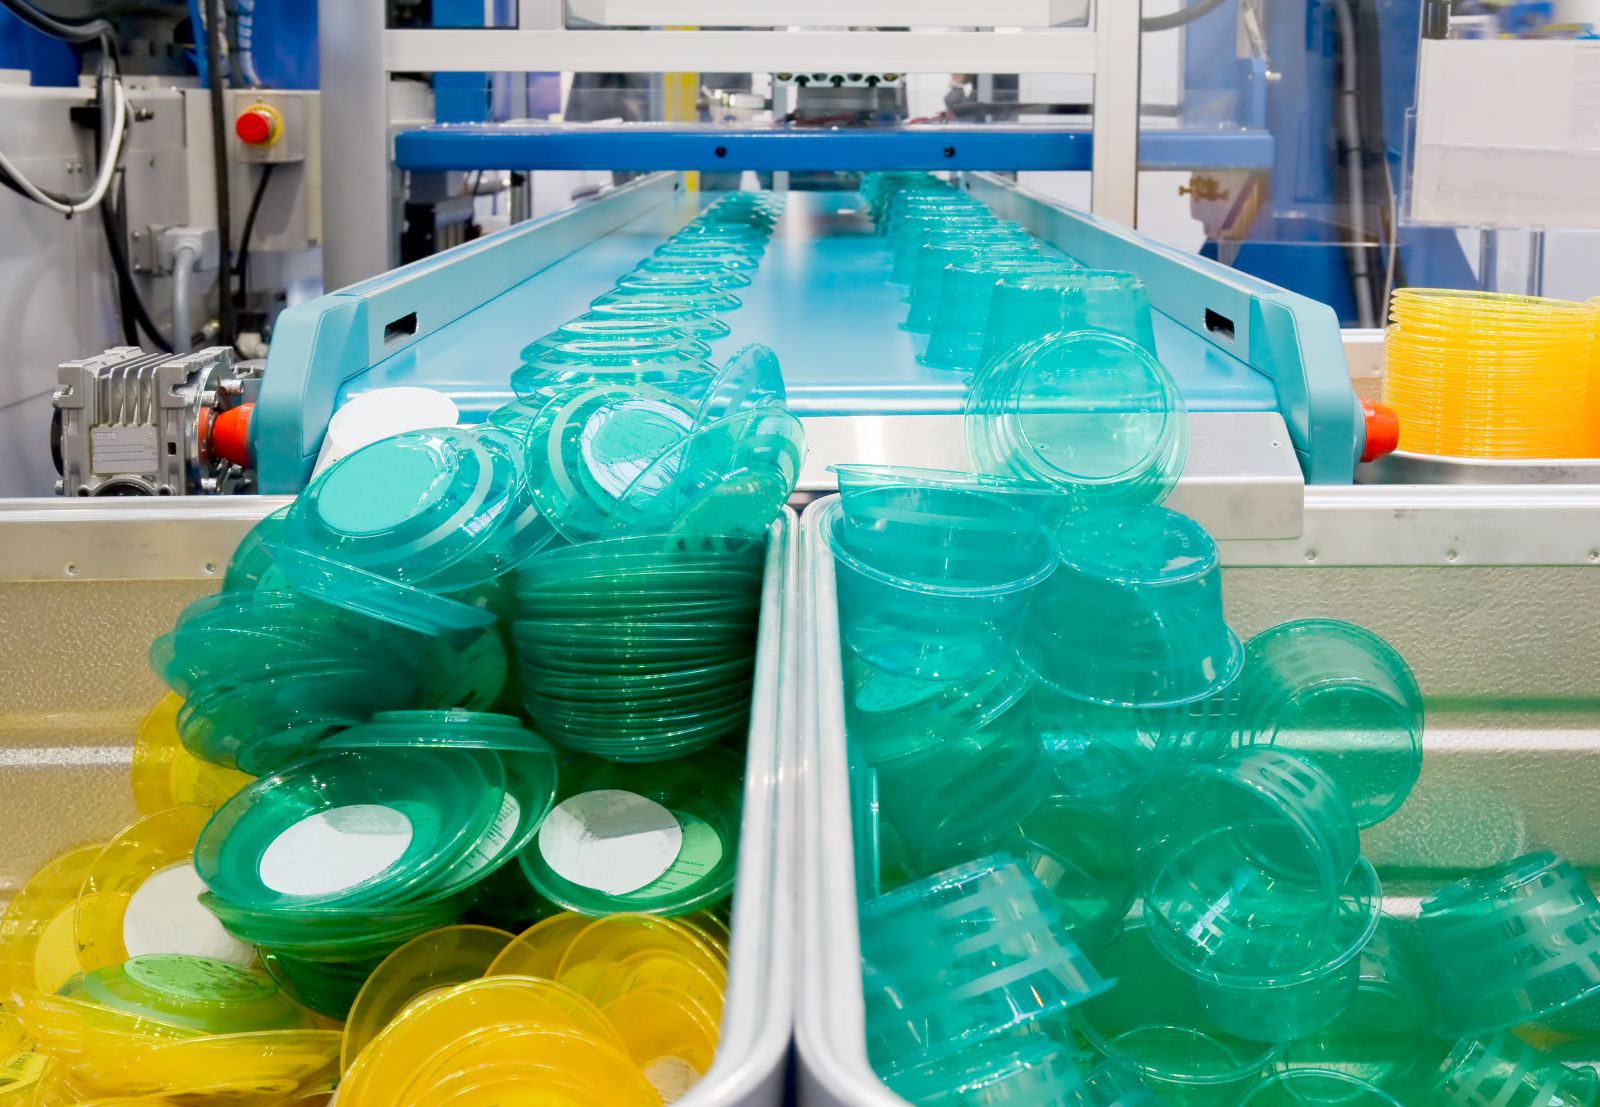 Піднебесна, безперечно, посідає перше місце в світі по виробництву виробів з пластмаси і одне з перших місць по виробництву обладнання для їх виробництва